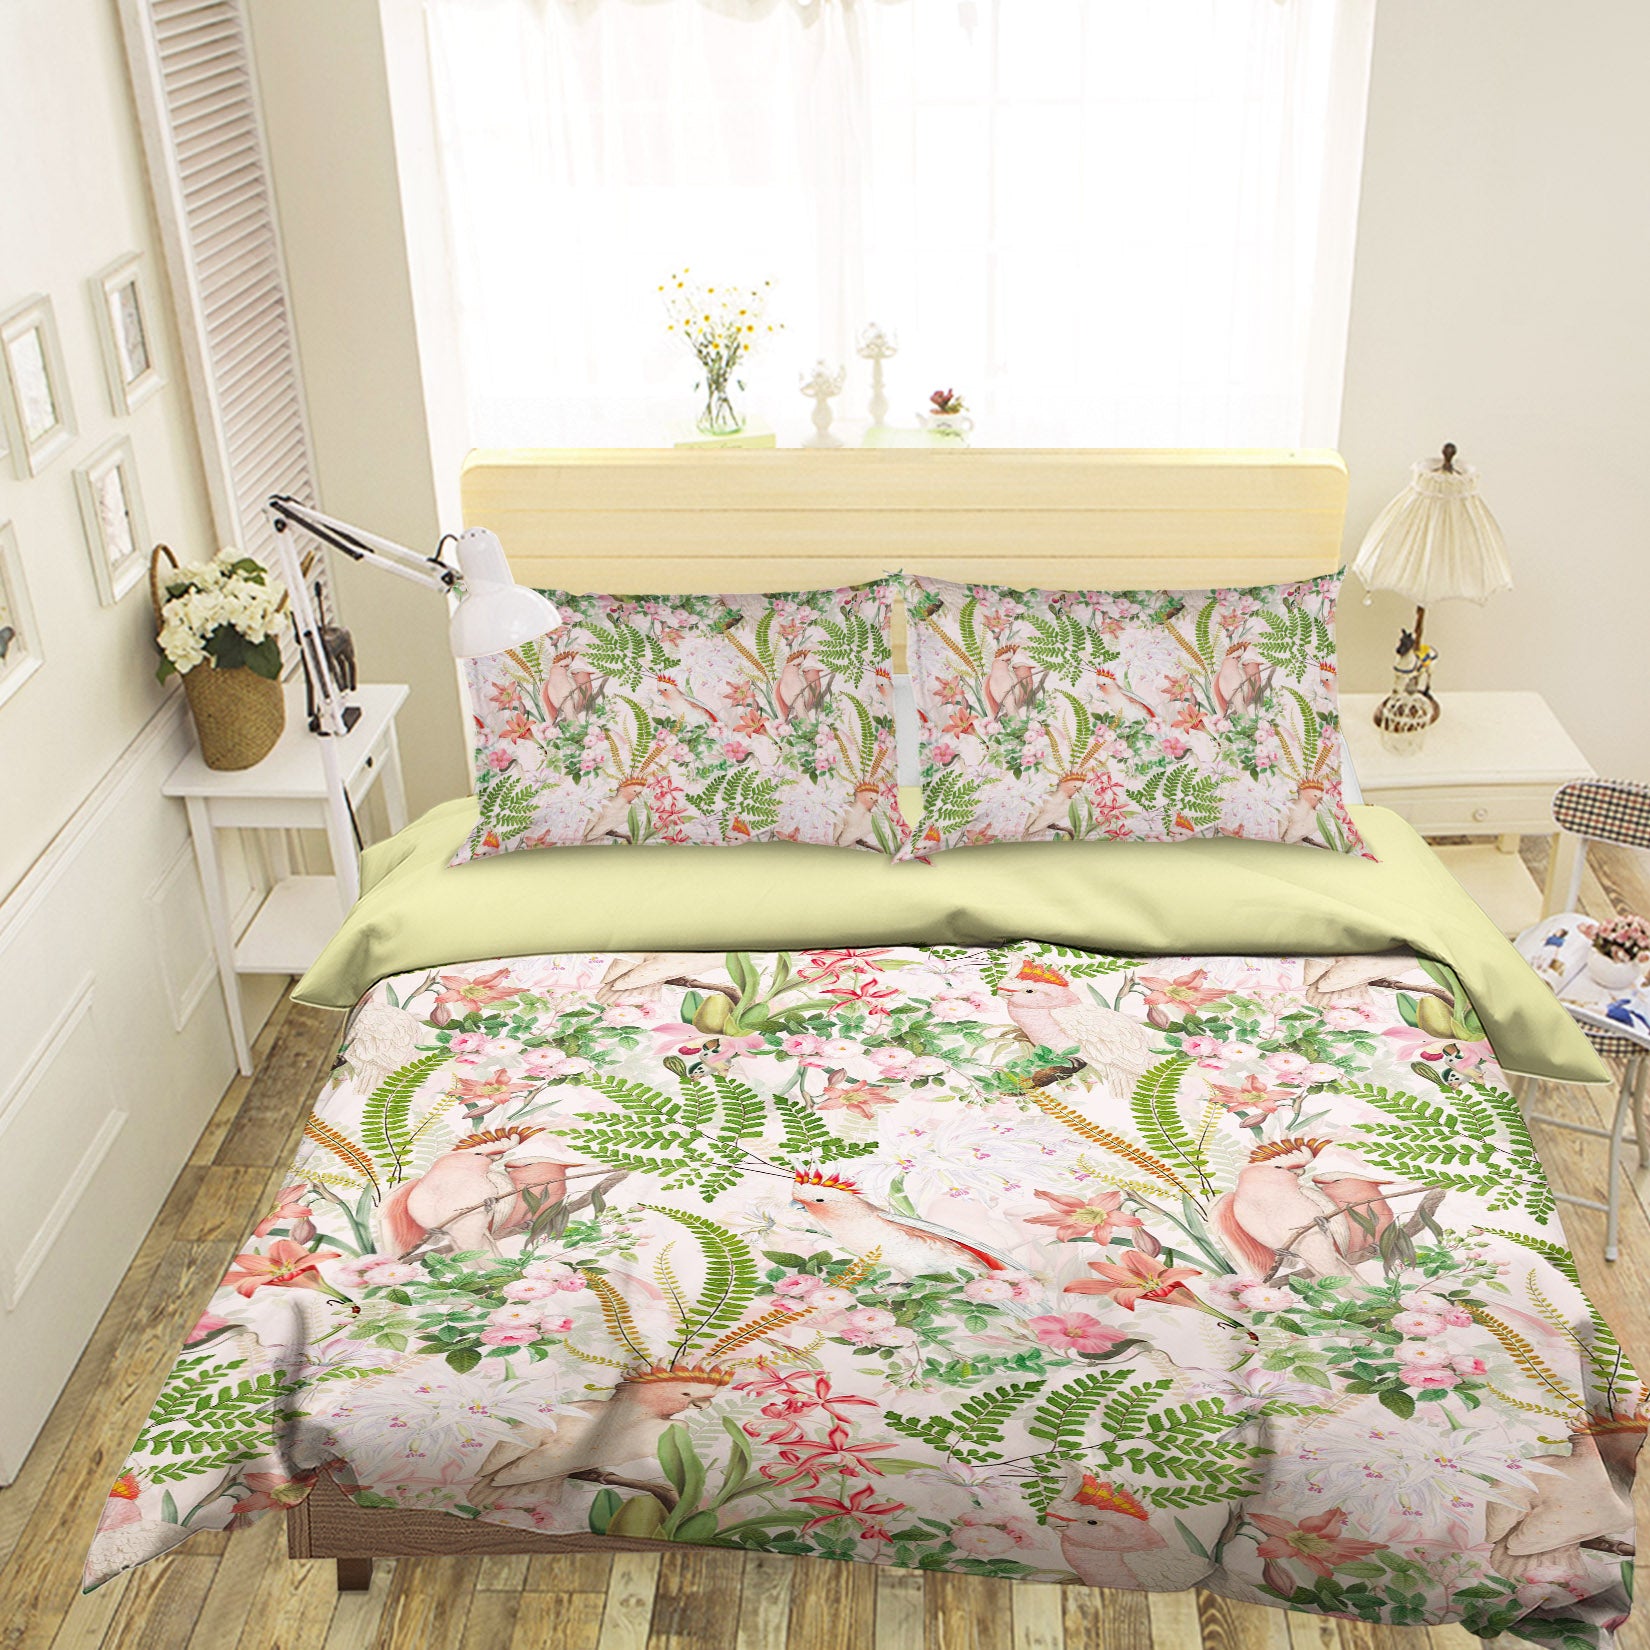 3D Parrot Red Lily Flower 127 Uta Naumann Bedding Bed Pillowcases Quilt